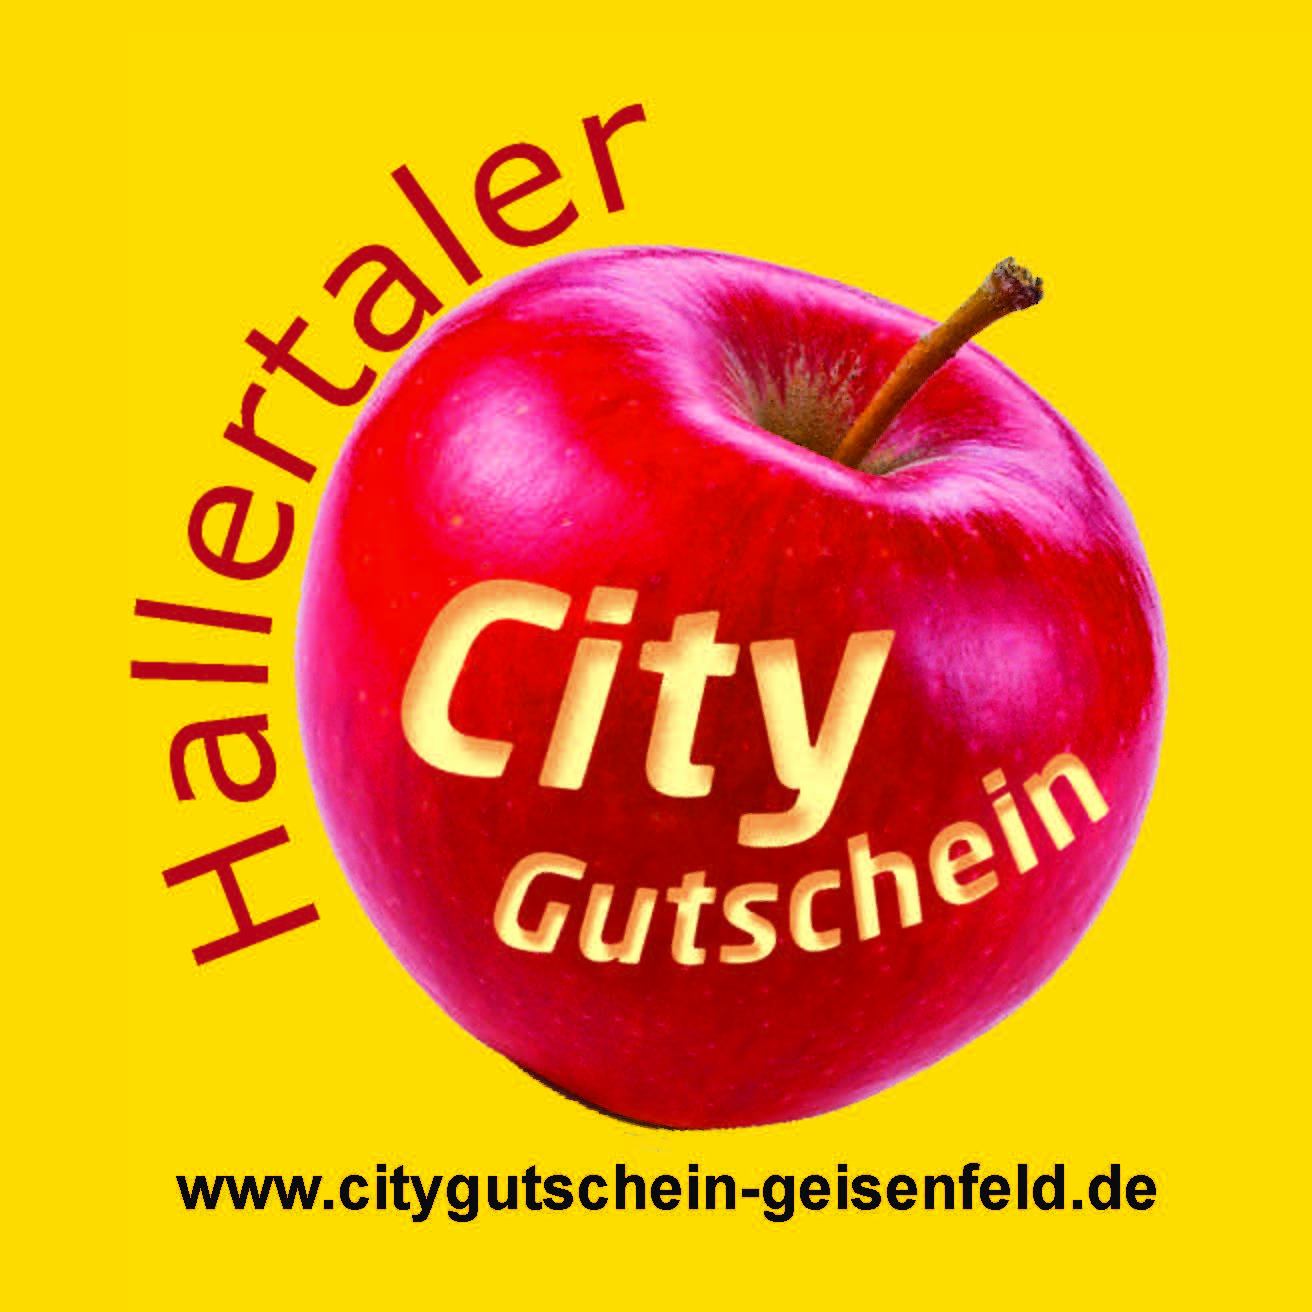 City Gutschein Geisenfeld